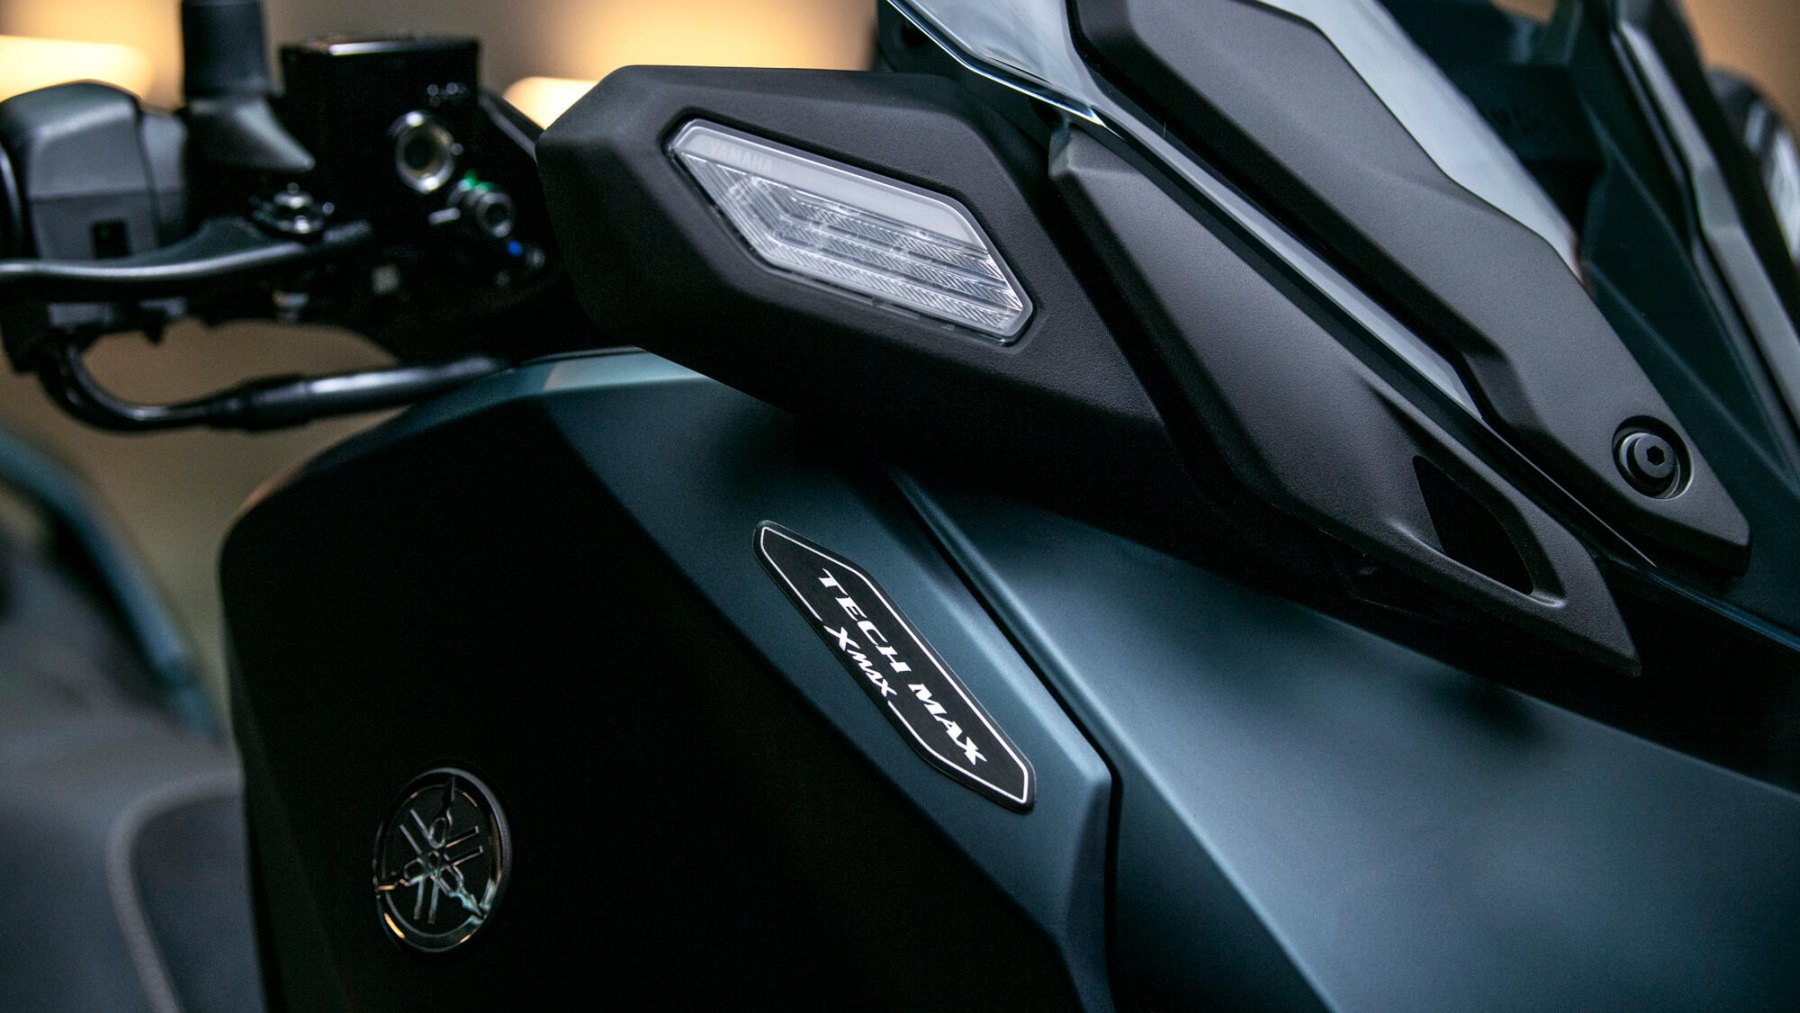 Vista del faro delantero y emblema de Yamaha X-Max 125cc, destacando su diseño moderno.